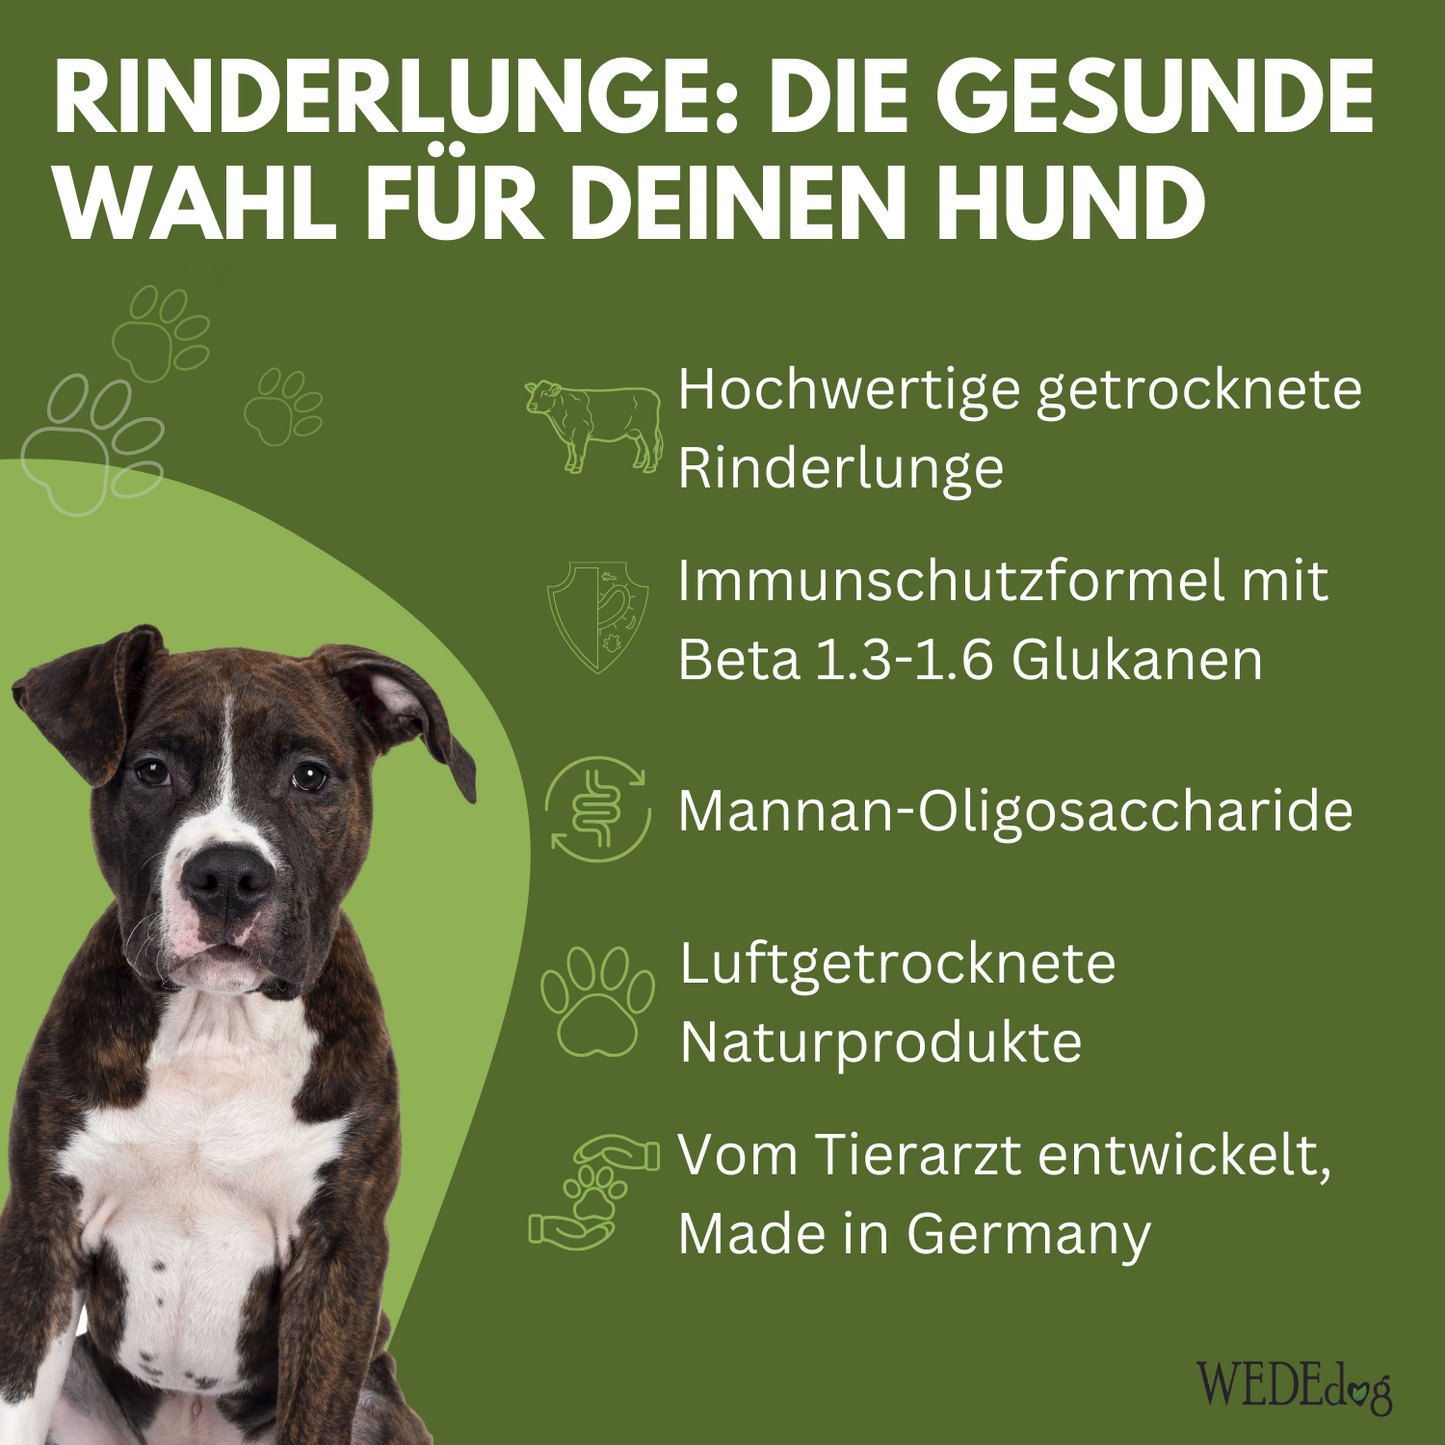 Getrocknete Rinderlunge für Hunde mit Immun+ Schutzformel I WEDEdog PURE+ Rinderlunge getrocknet I Rinderlunge Hund in Premium-Qualität I 150g